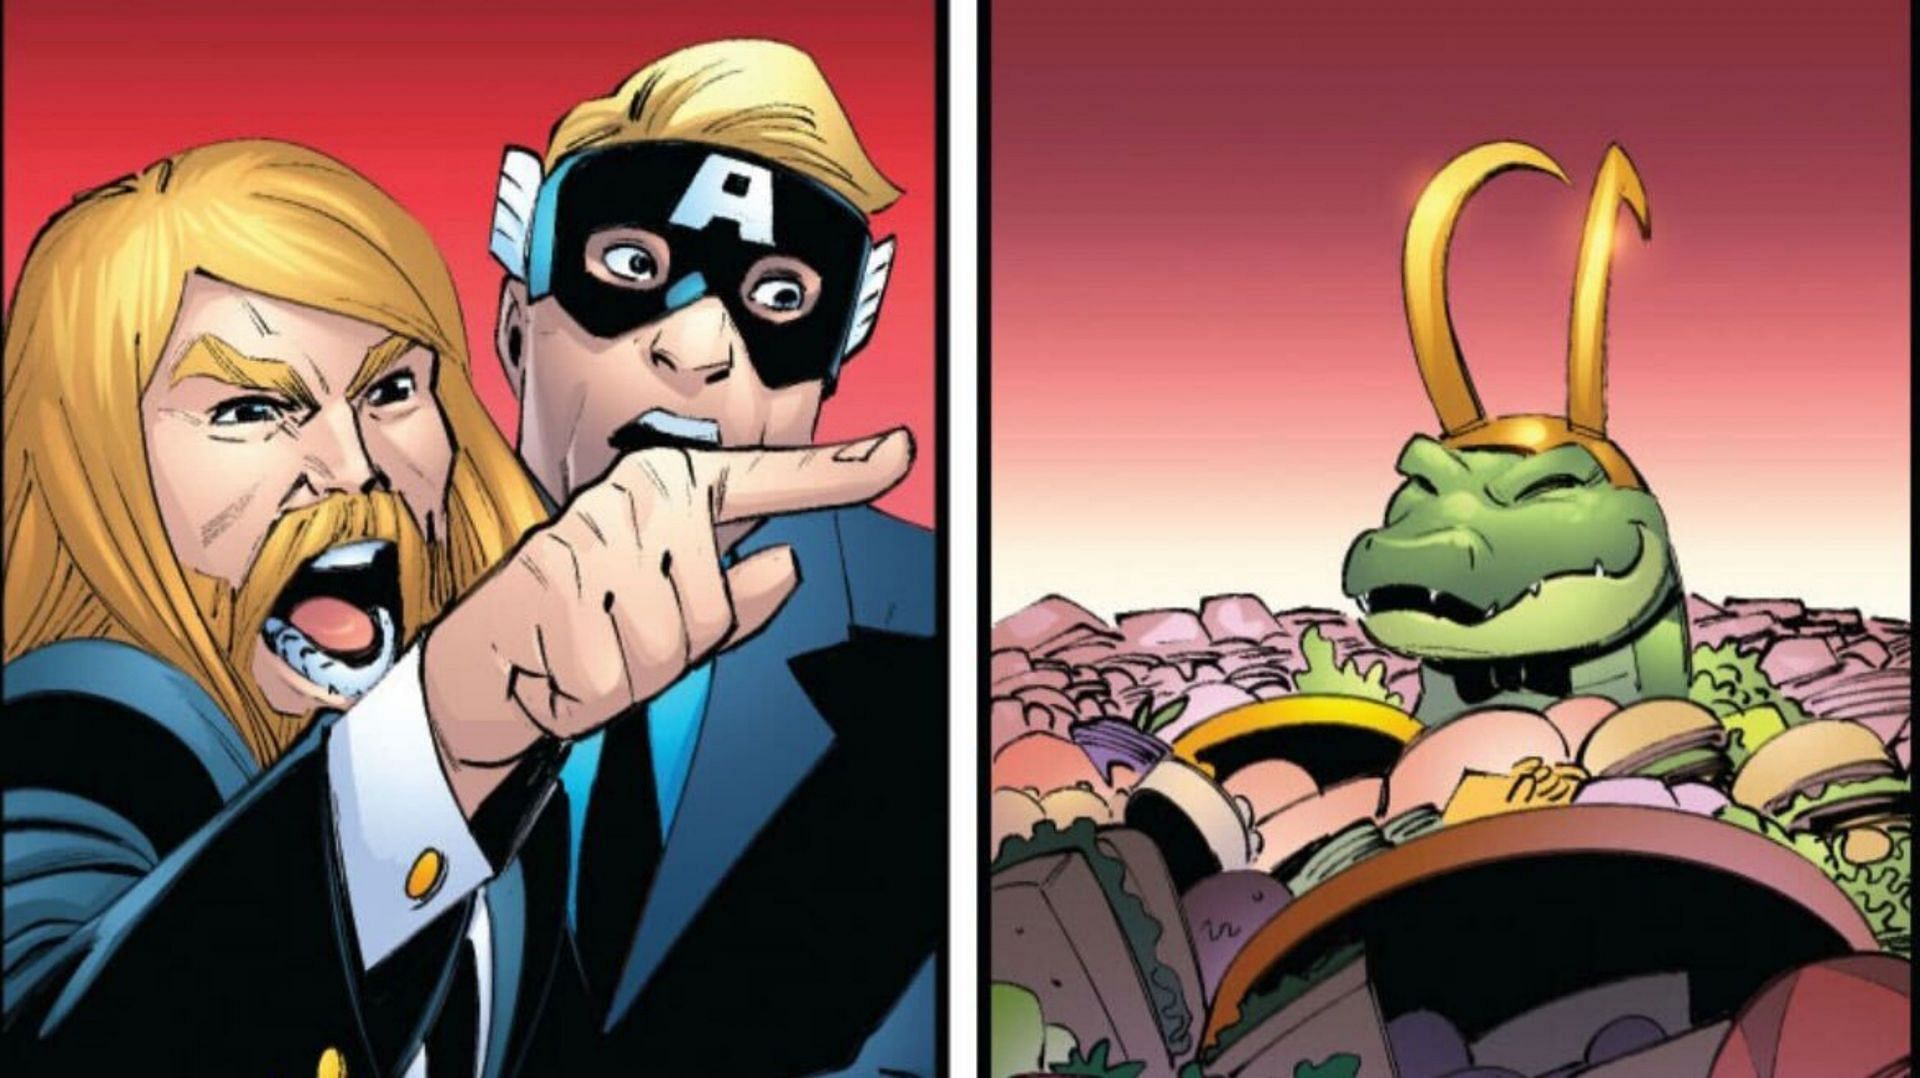 A panel from Alligator Loki Infinity (Image via Marvel Comics)